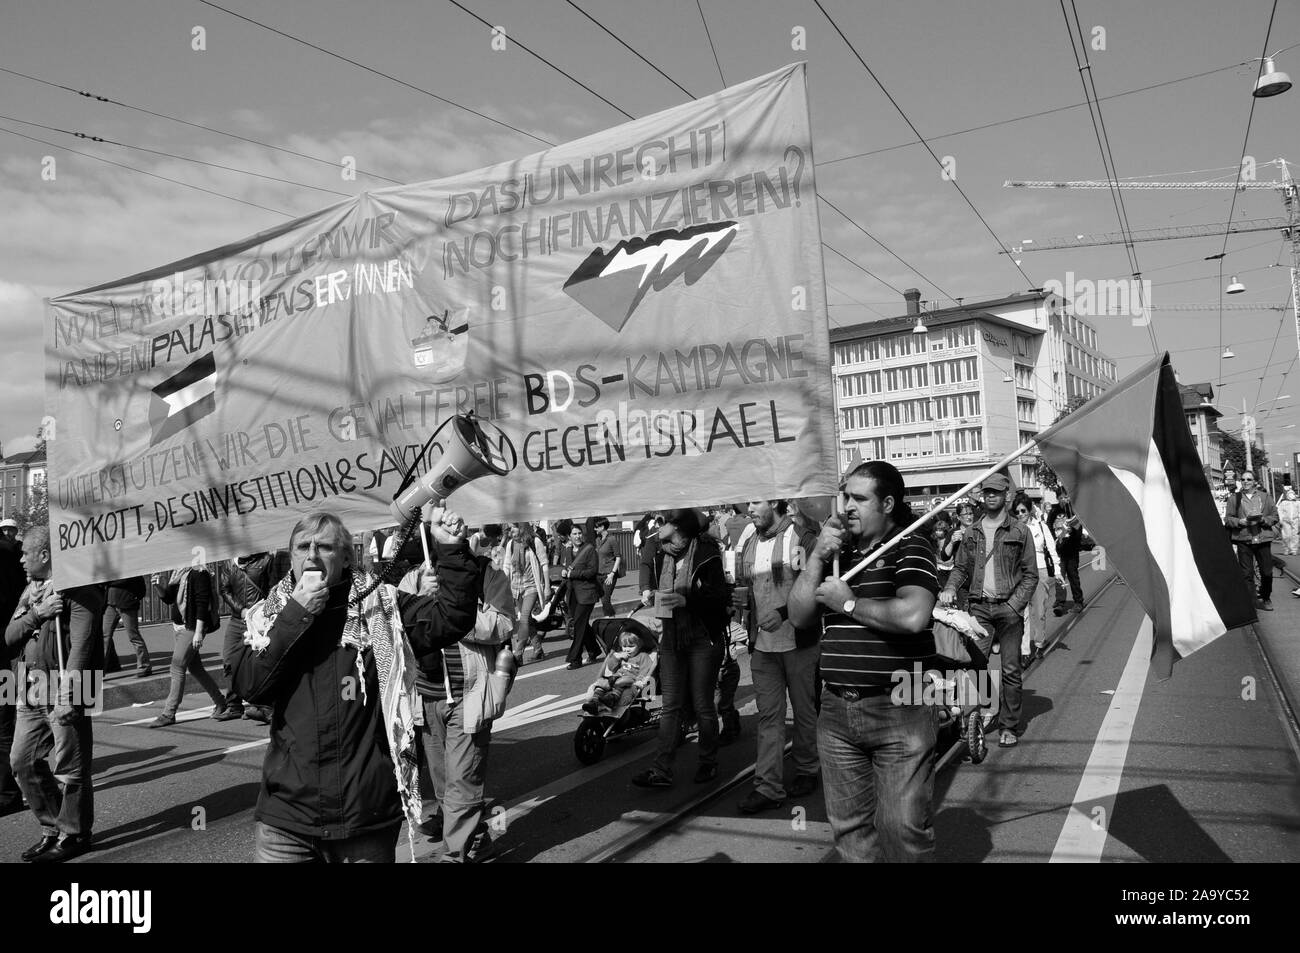 Palestina manifestation de protestation à Zürich : personnes exigeant des sanctions contre Israël Banque D'Images